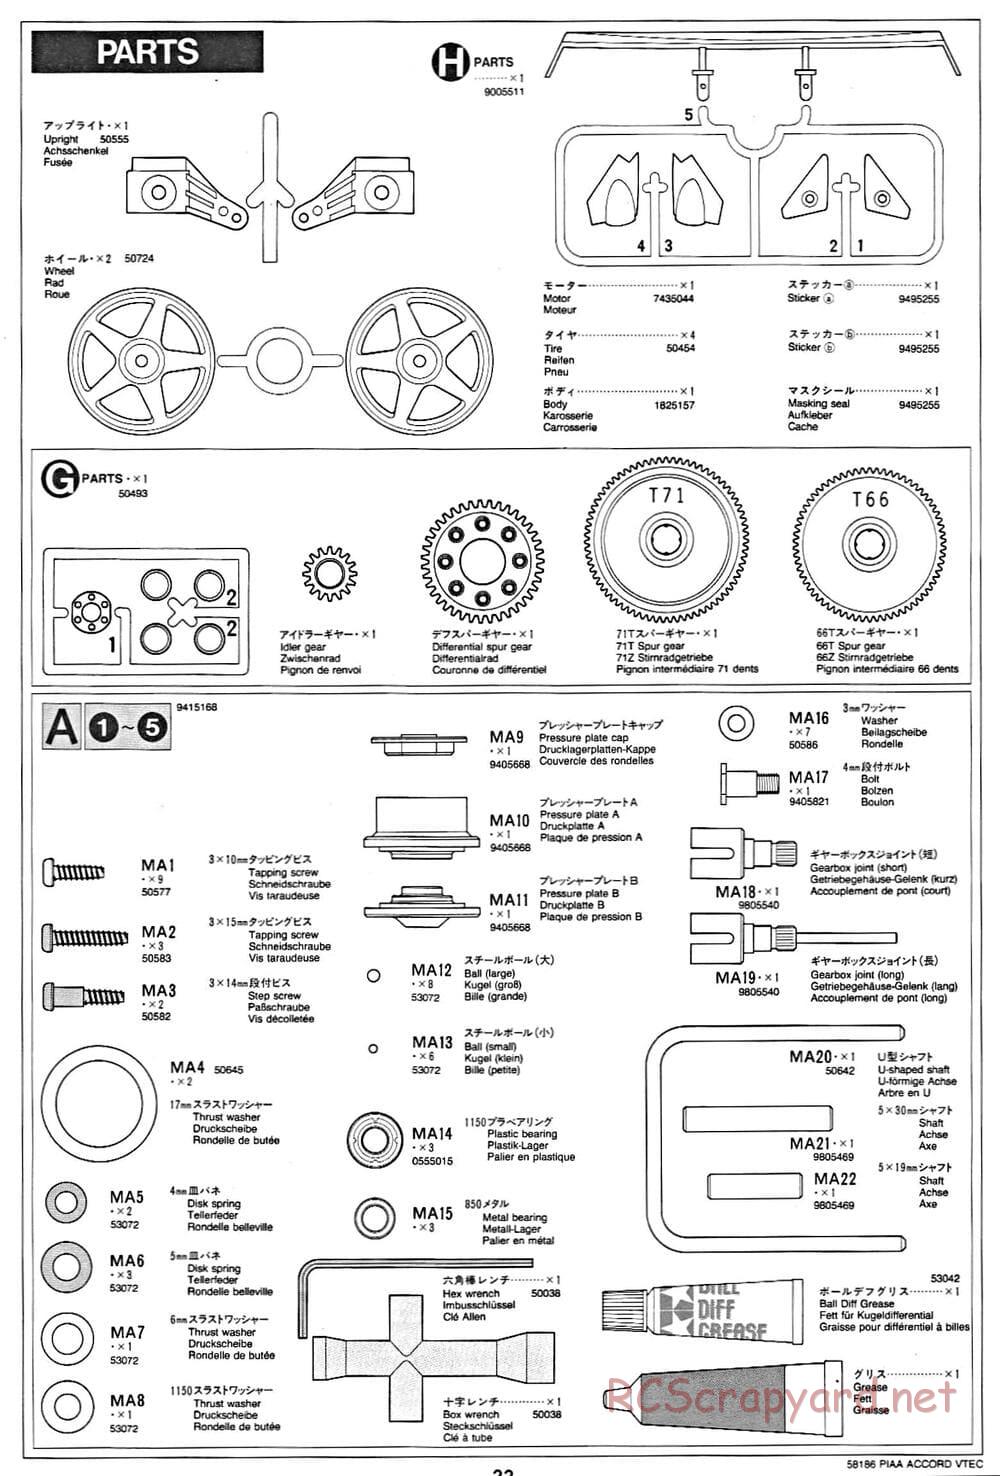 Tamiya - PIAA Accord VTEC - FF-01 Chassis - Manual - Page 22